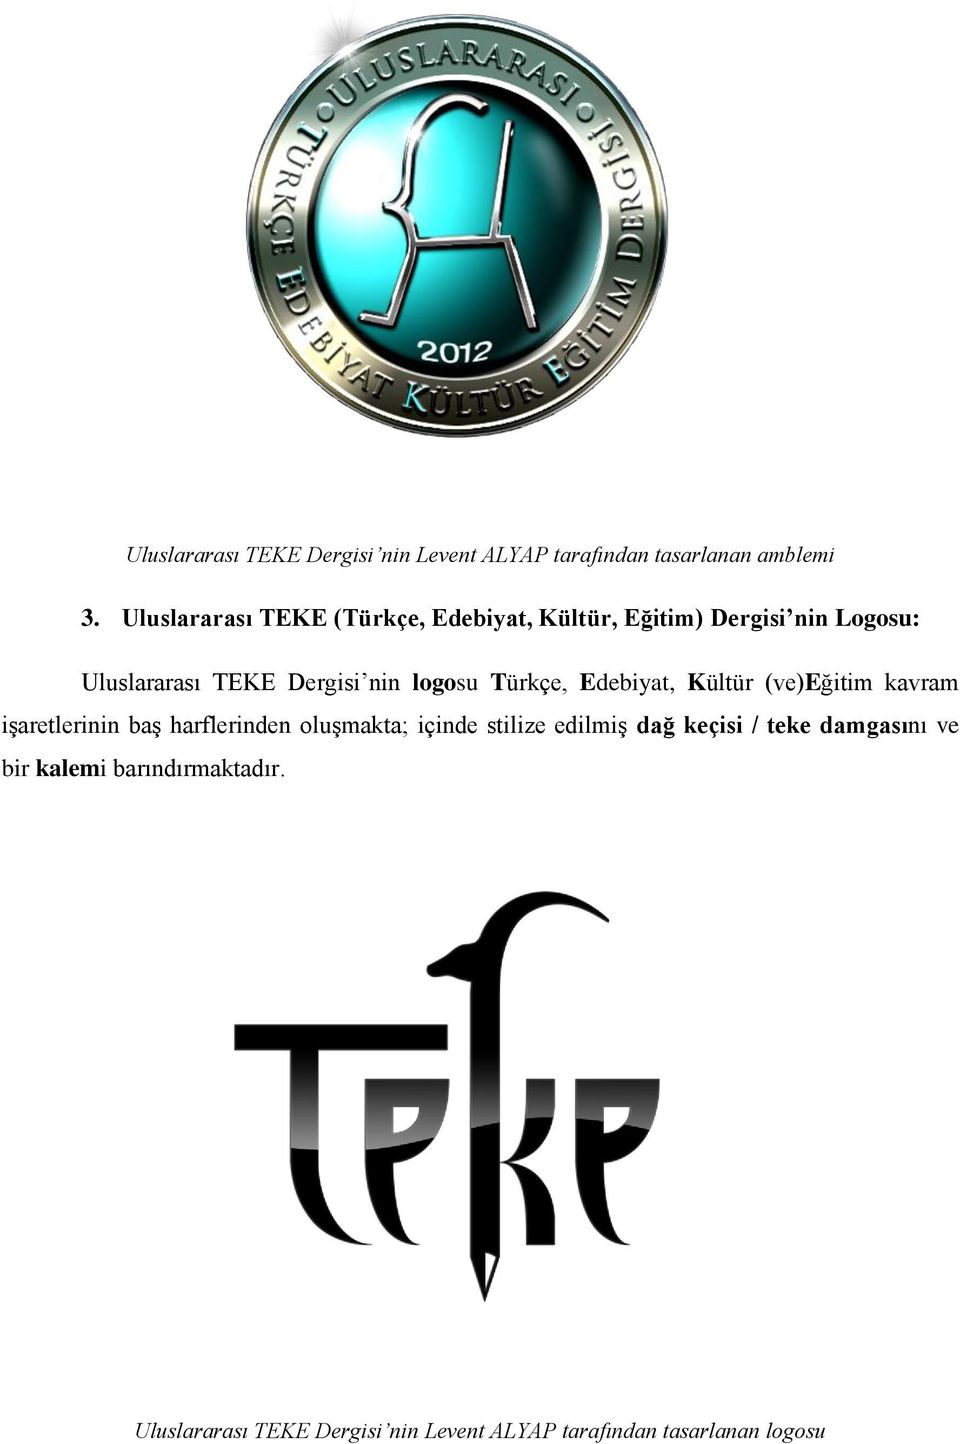 logosu Türkçe, Edebiyat, Kültür (ve)eğitim kavram işaretlerinin baş harflerinden oluşmakta; içinde stilize